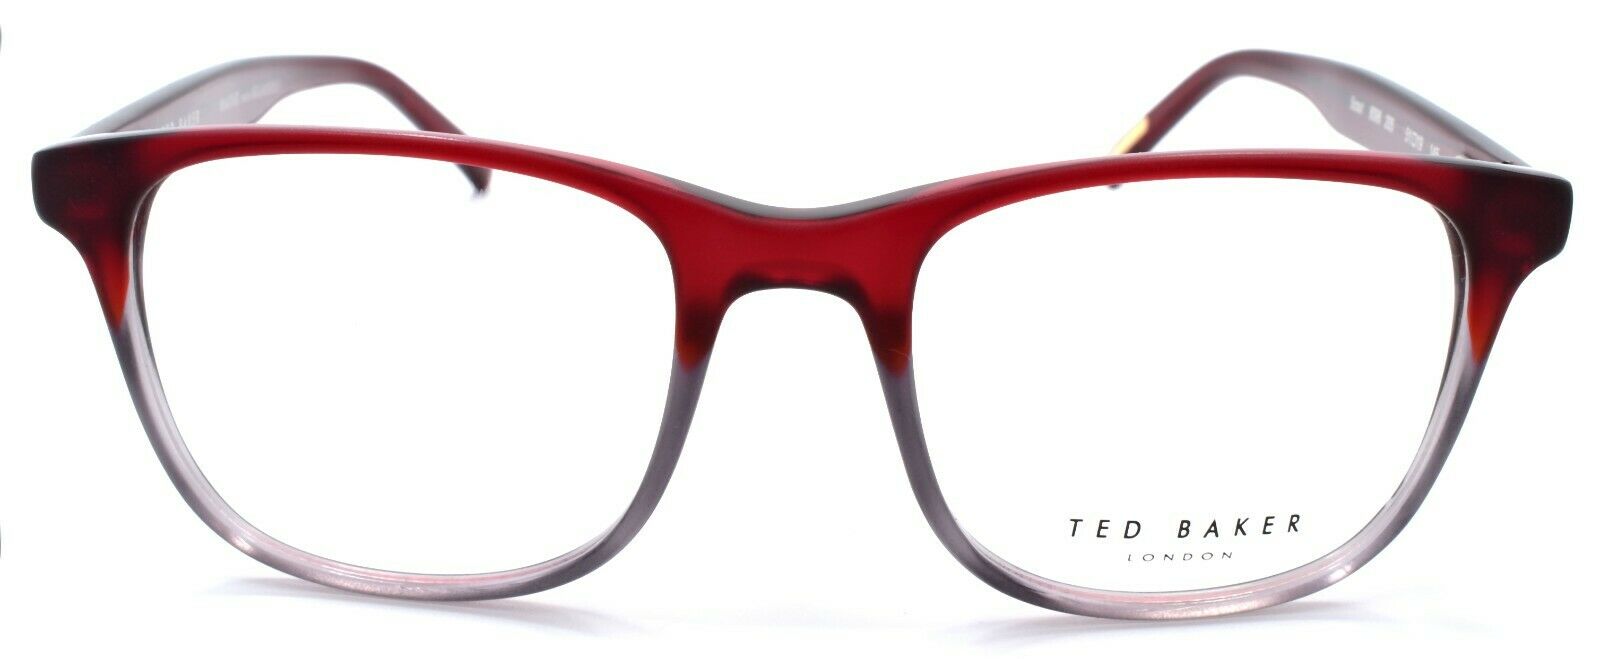 2-Ted Baker Scout 8098 205 Eyeglasses Frames 51-19-145 Burgundy / Grey-4894327076246-IKSpecs